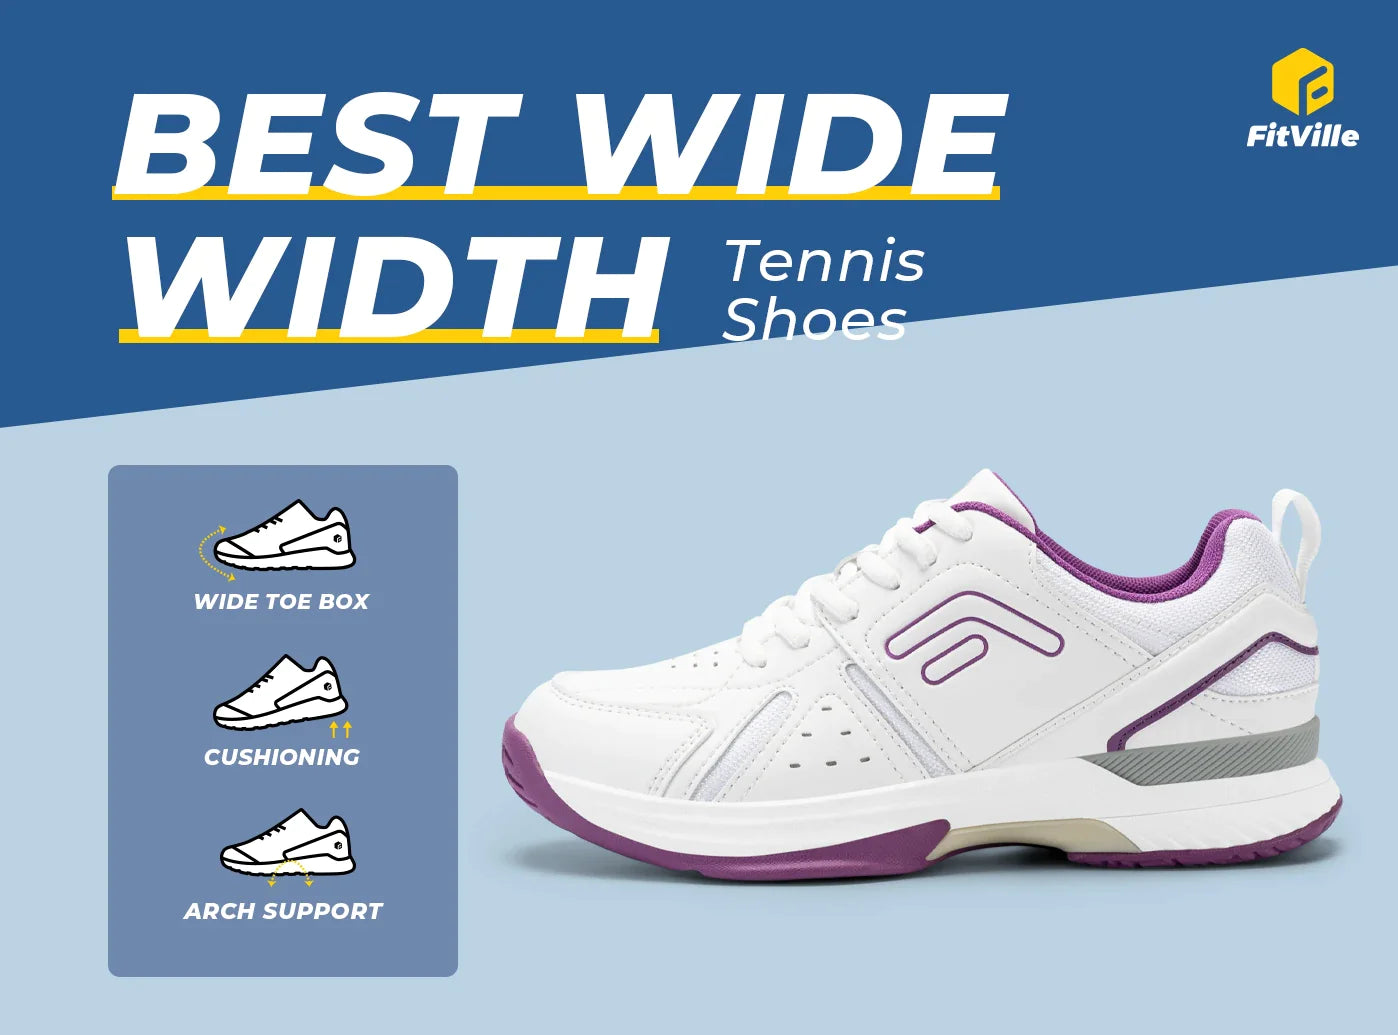 FitVille Women's Amadeus Tennis & Pickleball Court Shoes V5-10